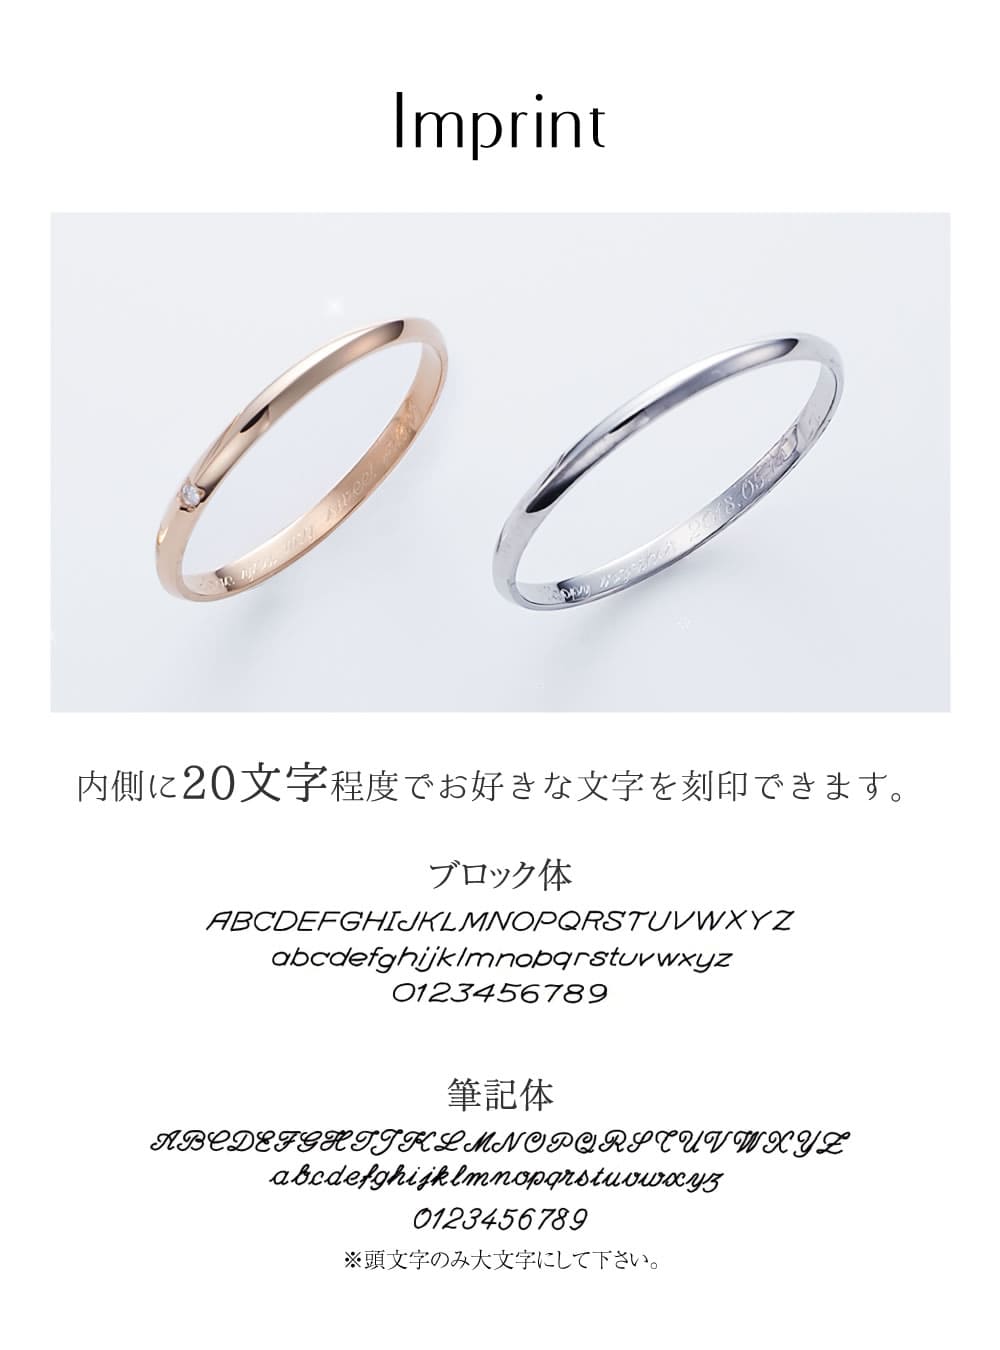 プラチナとK18ピンクゴールドの結婚指輪刻印